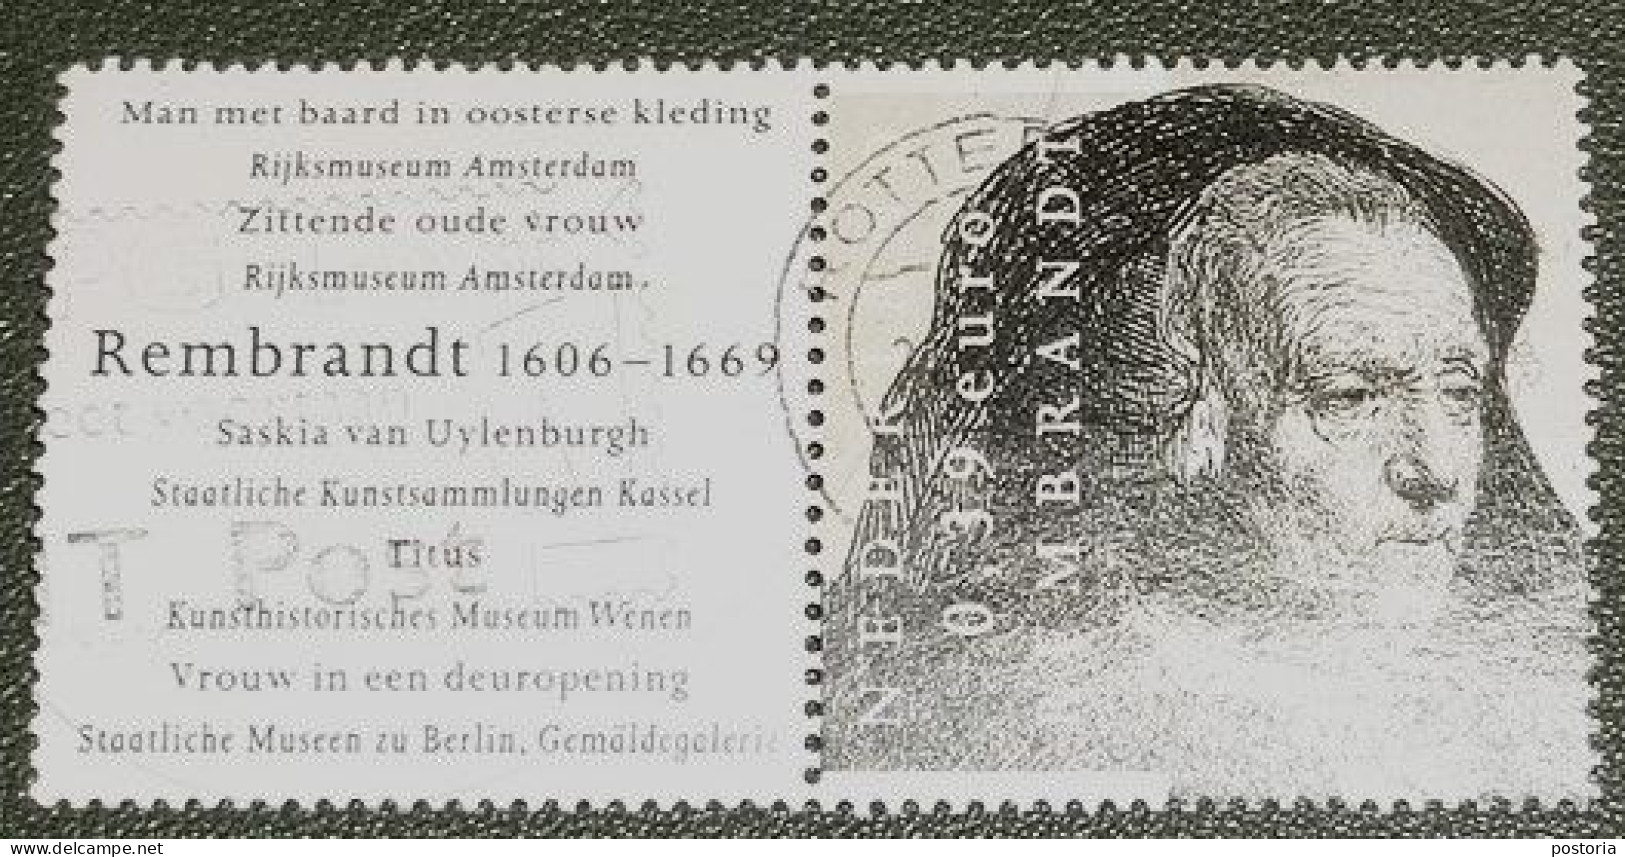 Nederland - NVPH - 2430 - 2006 - Gebruikt - Cancelled - Rembrandt - Met Tab - Zittende Oude Vrouw - Usati